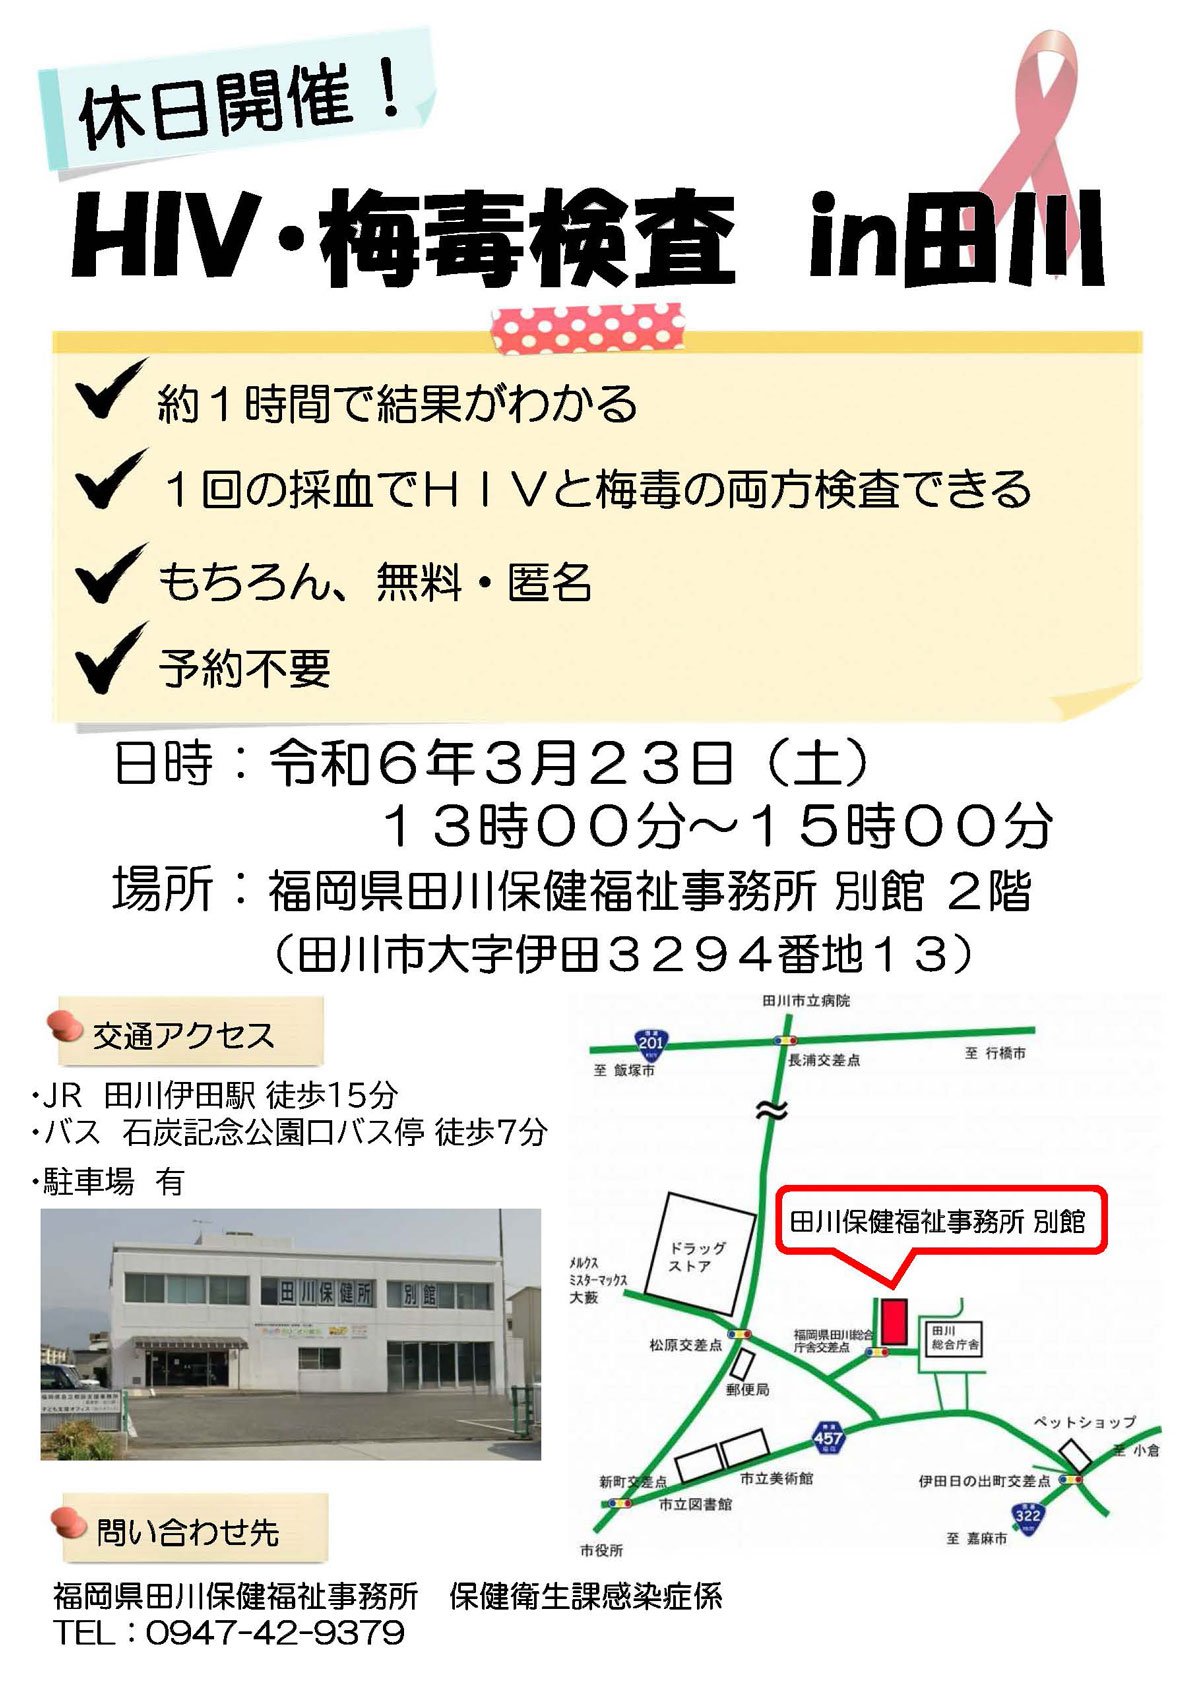 3月23日土曜日に田川保健所でHIVと梅毒の即日検査実施